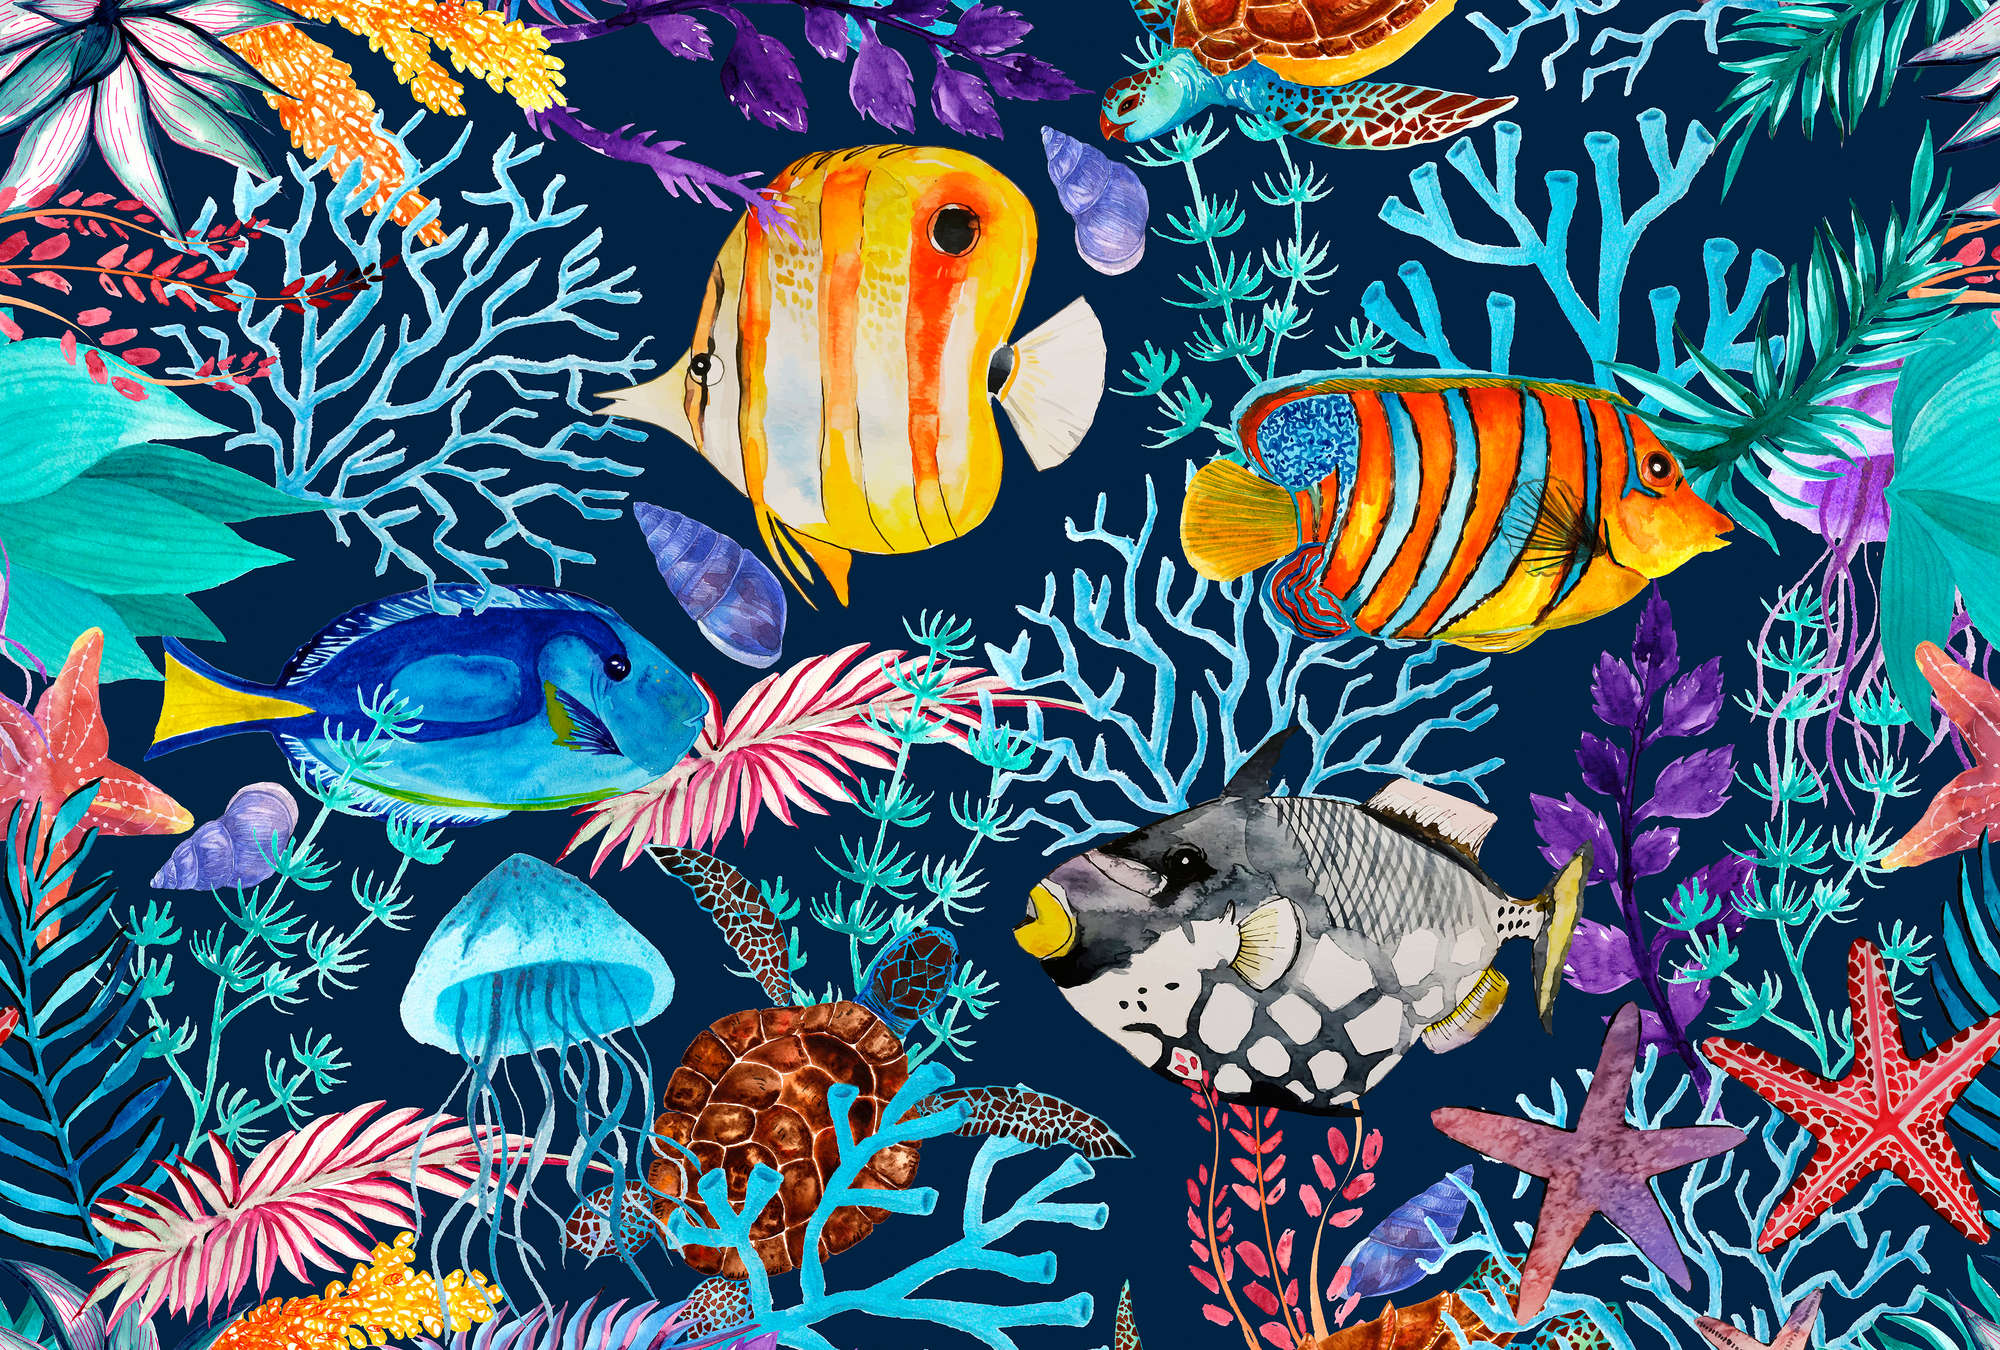             Onderwaterbehang met kleurrijke vissen en zeesterren
        